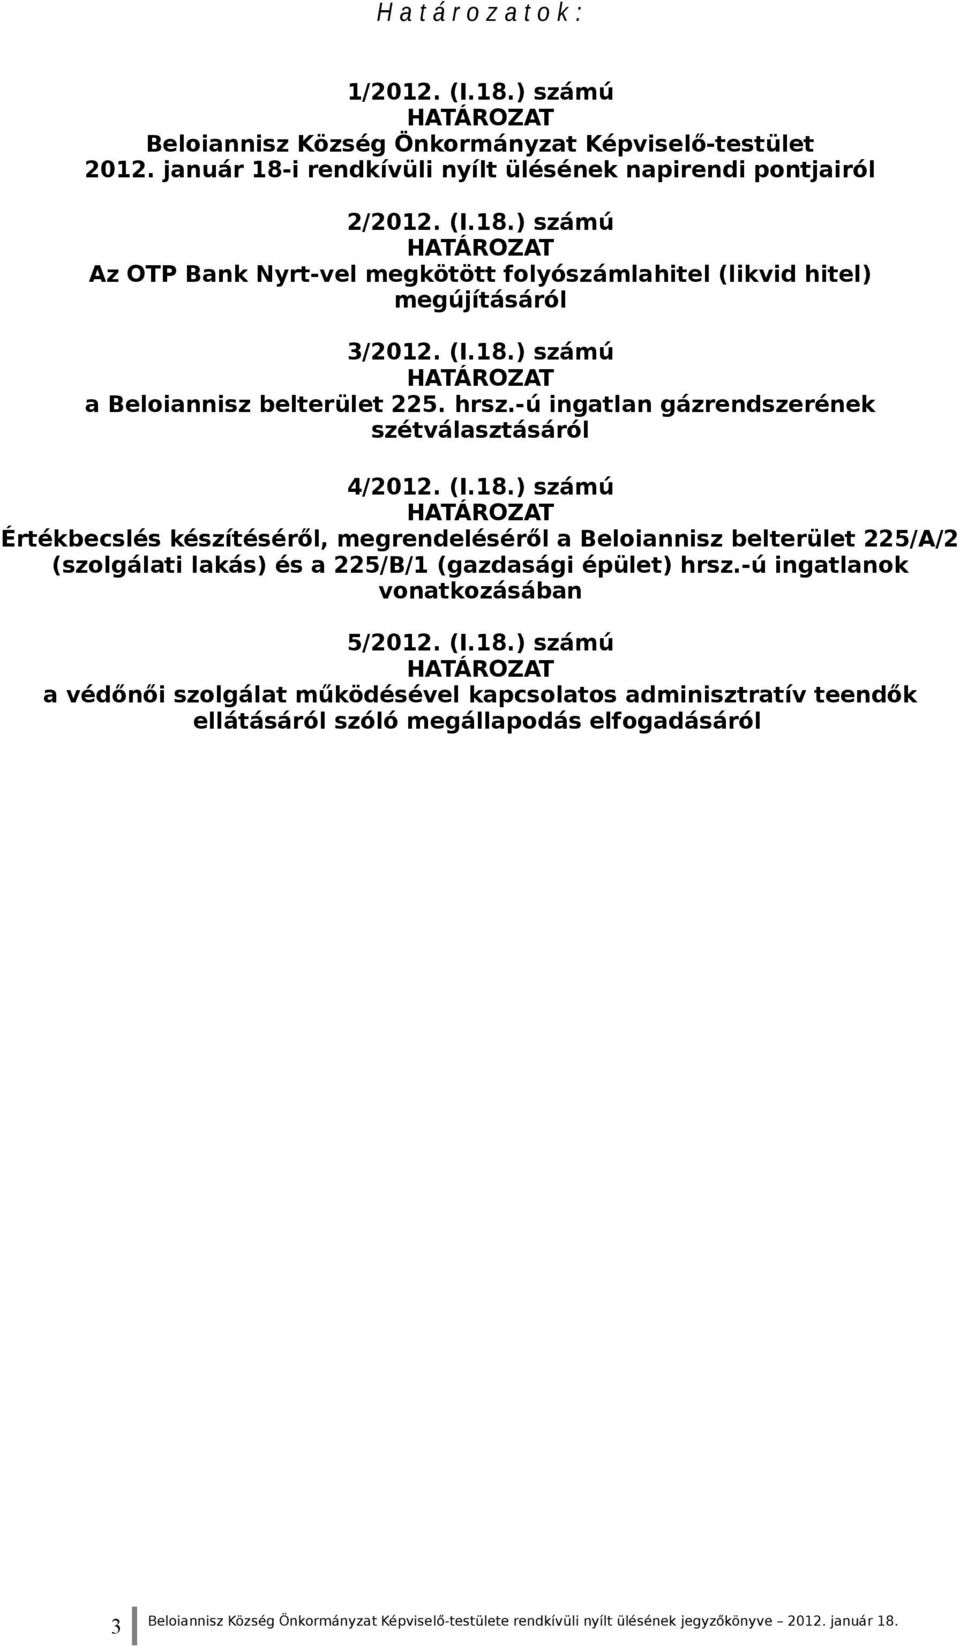 -ú ingatlanok vonatkozásában 5/2012. (I.18.) számú HATÁROZAT a védőnői szolgálat működésével kapcsolatos adminisztratív teendők ellátásáról szóló megállapodás elfogadásáról 3